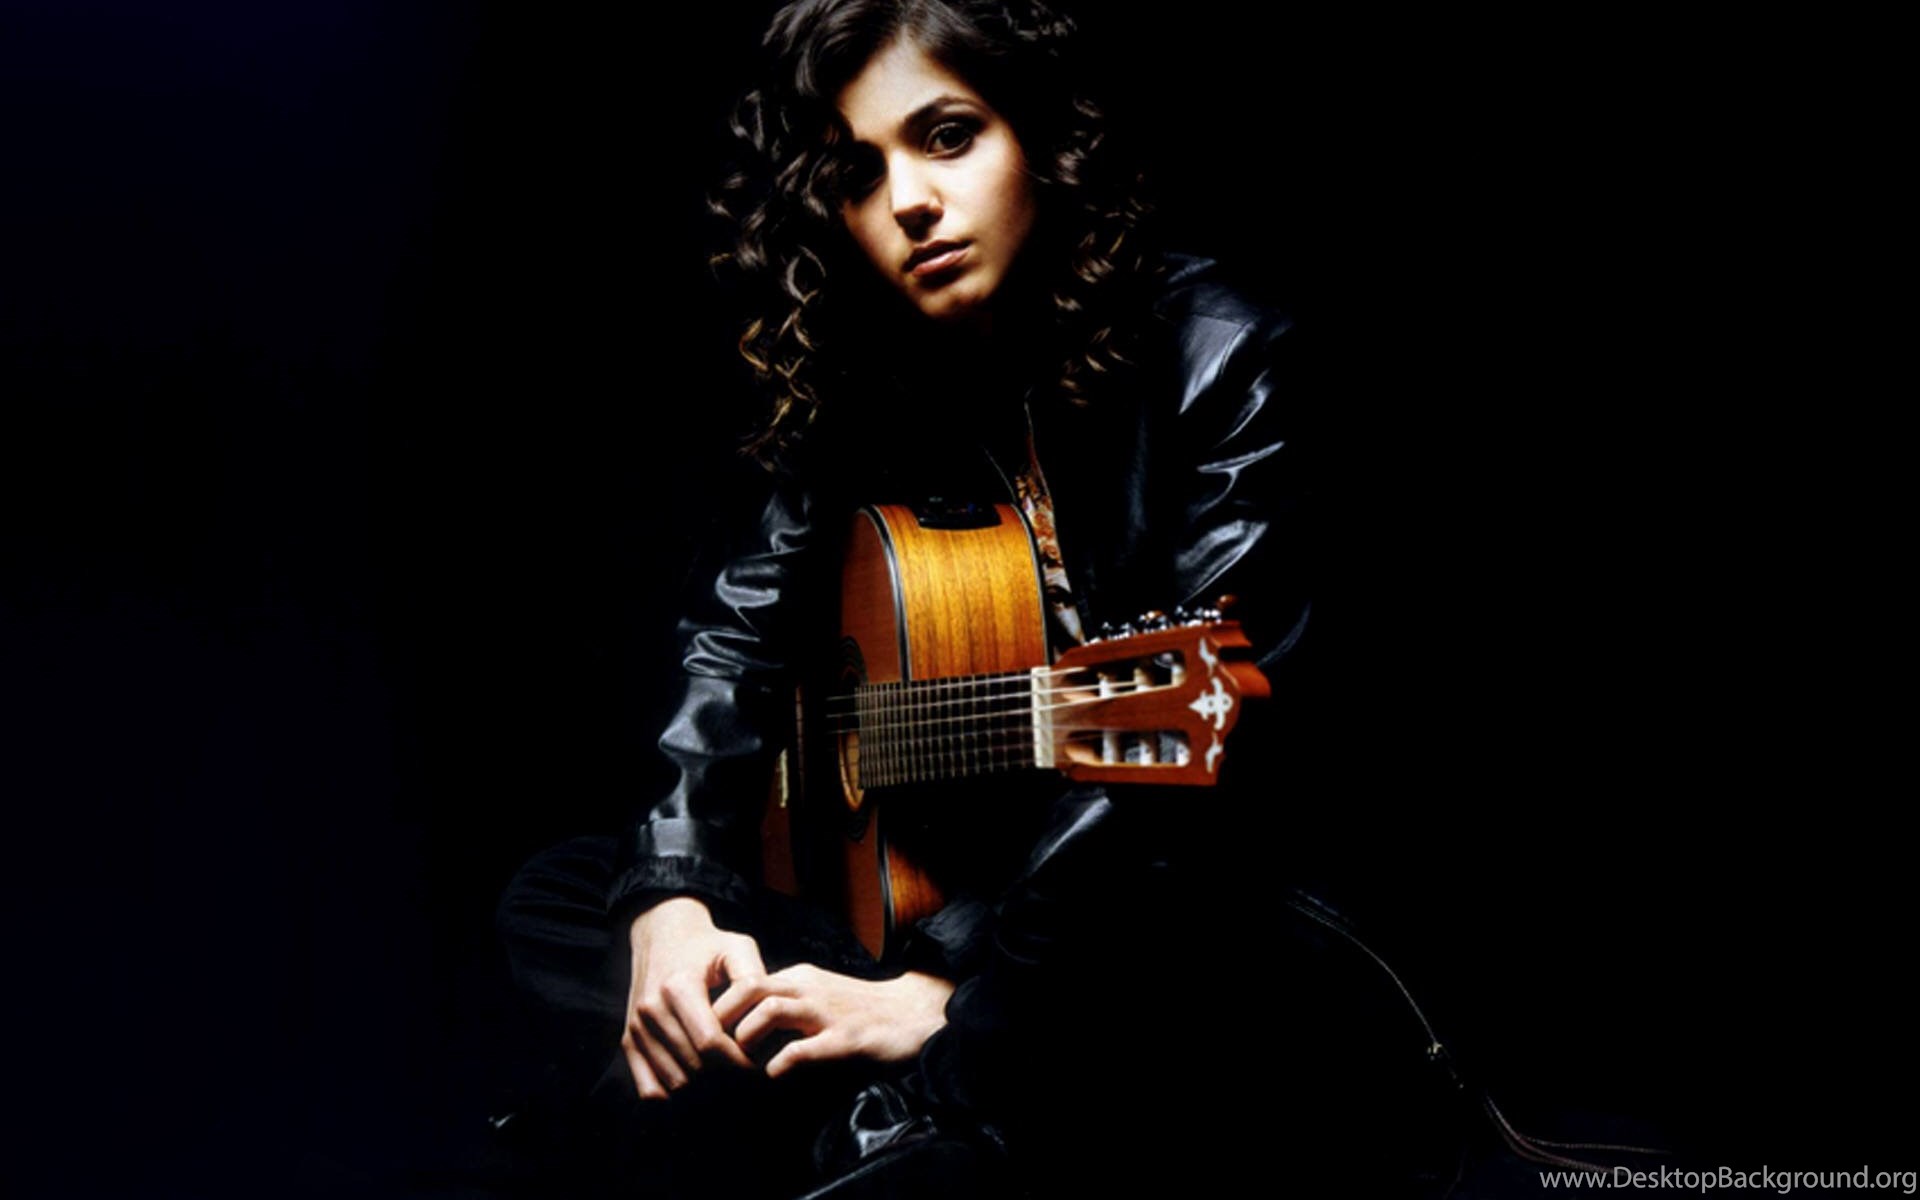 Wonderful life melua. Katie Melua. Katie Melua - Call off the search (2003). Katie Melua с гитарой. Анри Мелуа.